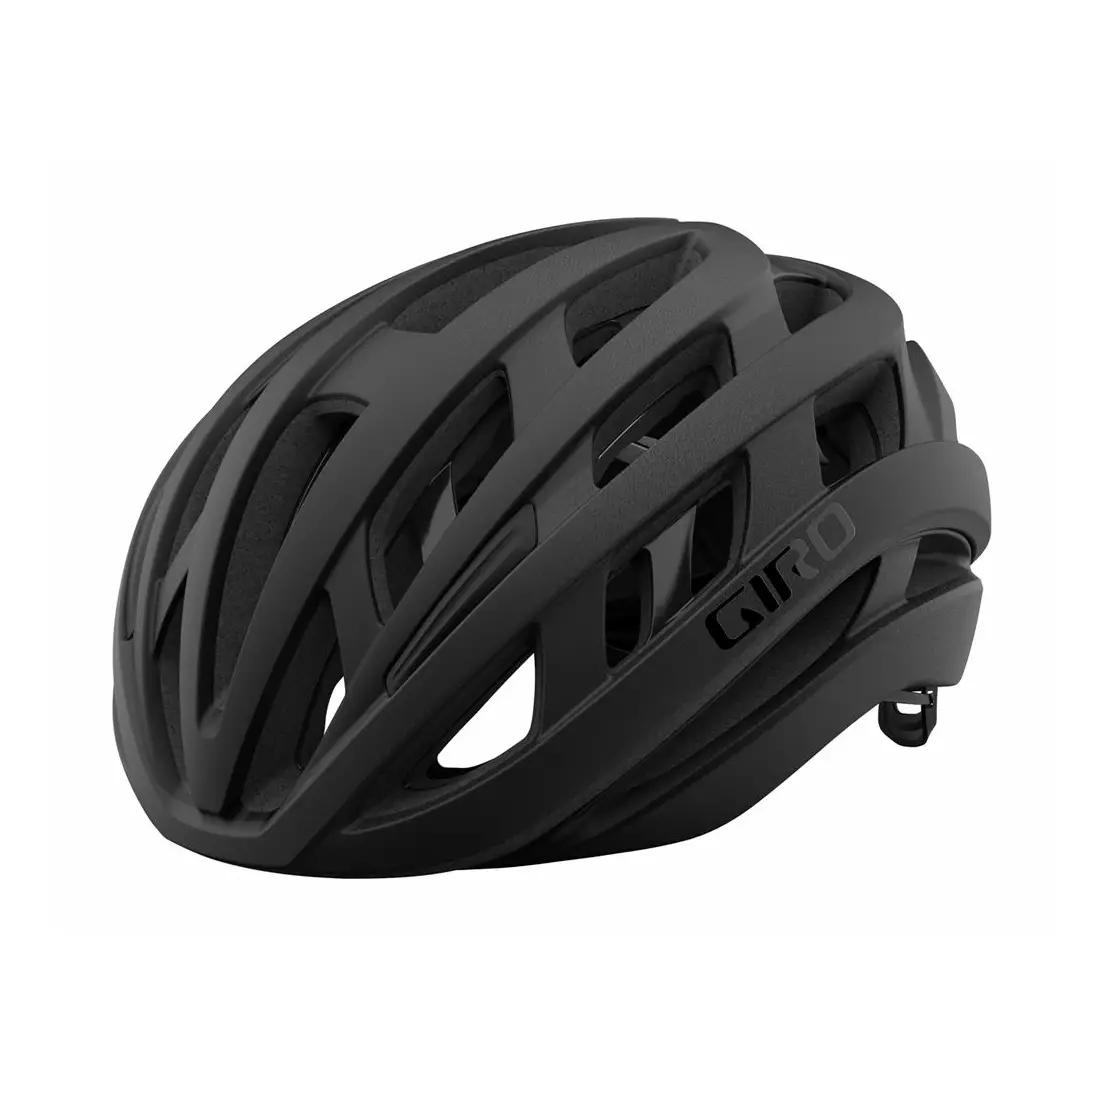 GIRO HELIOS SPHERICAL MIPS road bike helmet, matte black fade